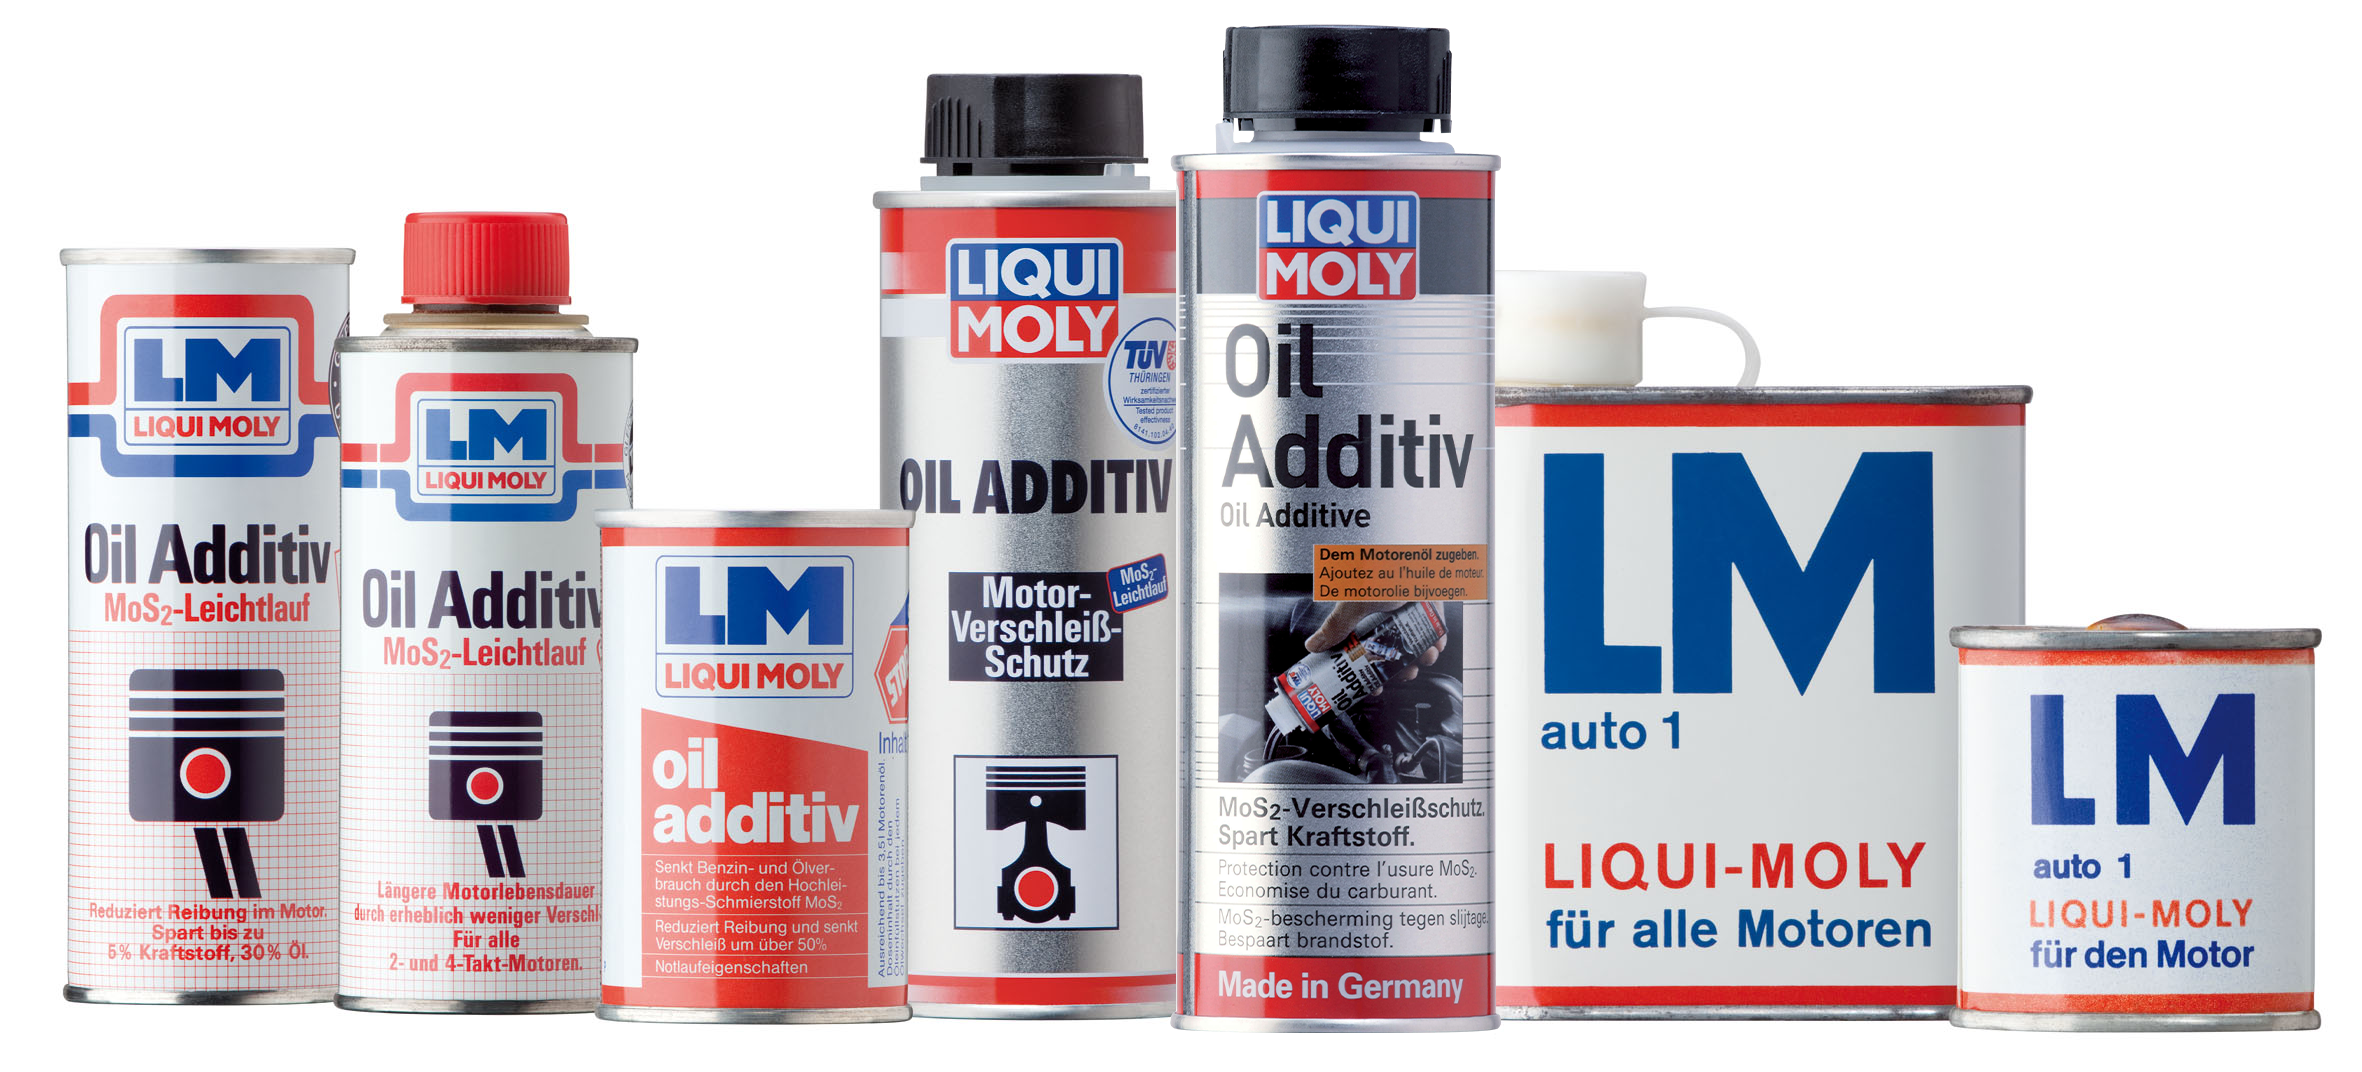 LIQUI MOLY besteht umfangreichen Test: Prüfungen bestätigen positive  Wirkung der Öl- und Kraftstoff-Additive aus Ulm. - News - Mercedes-Fans -  Das Magazin für Mercedes-Benz-Enthusiasten